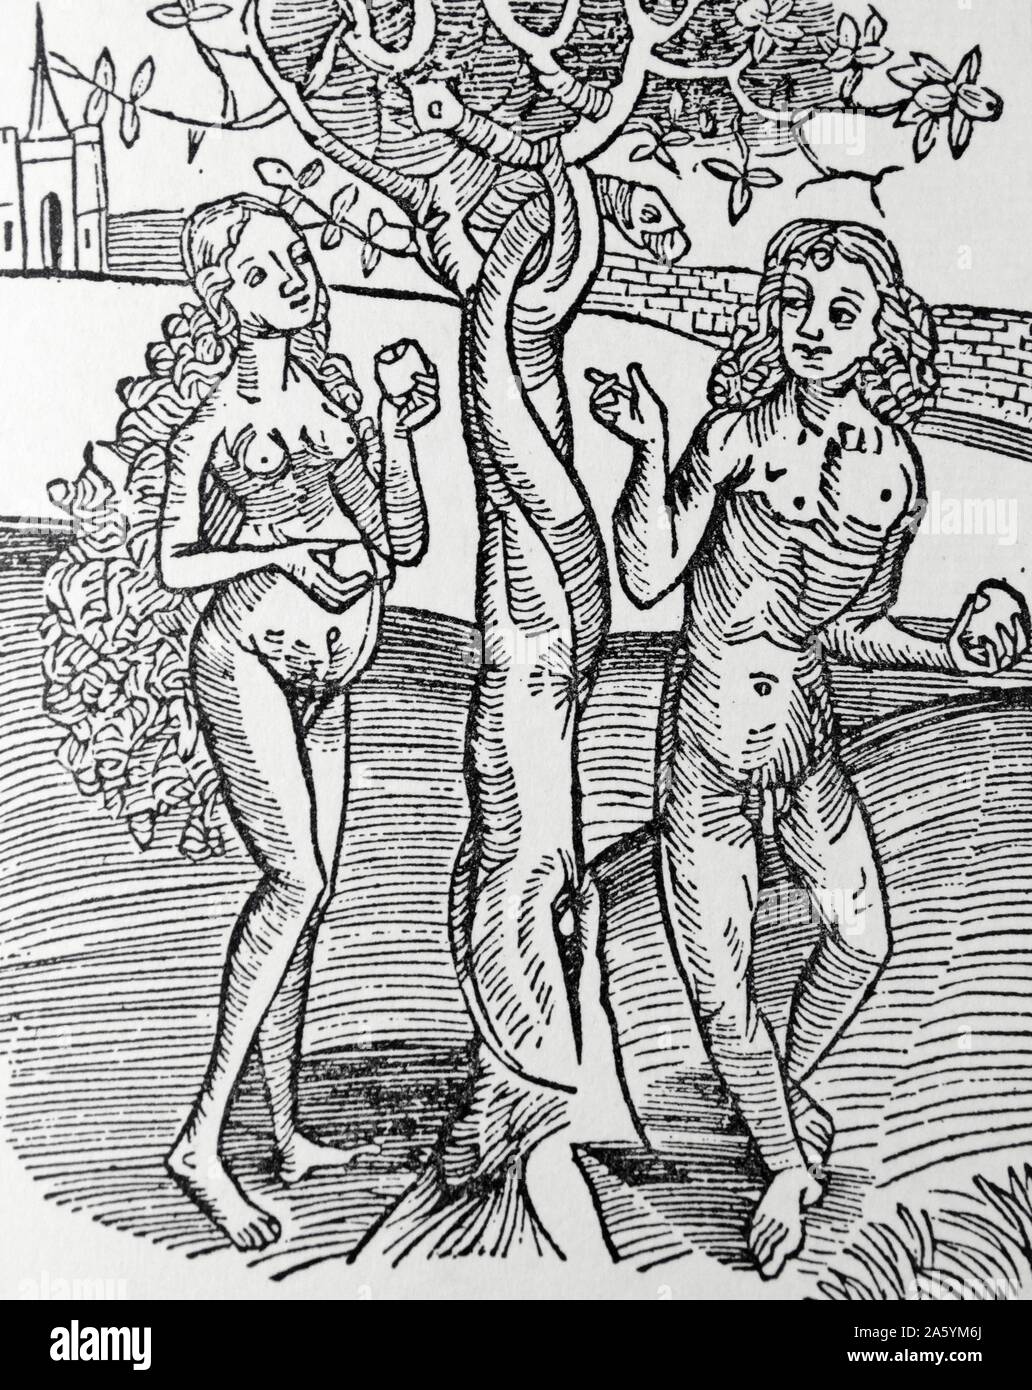 Adán y Eva tentados por la serpiente en el Jardín del Edén. Desde el año 1504, edición de 'Methodus Primum Olimpiade' Foto de stock